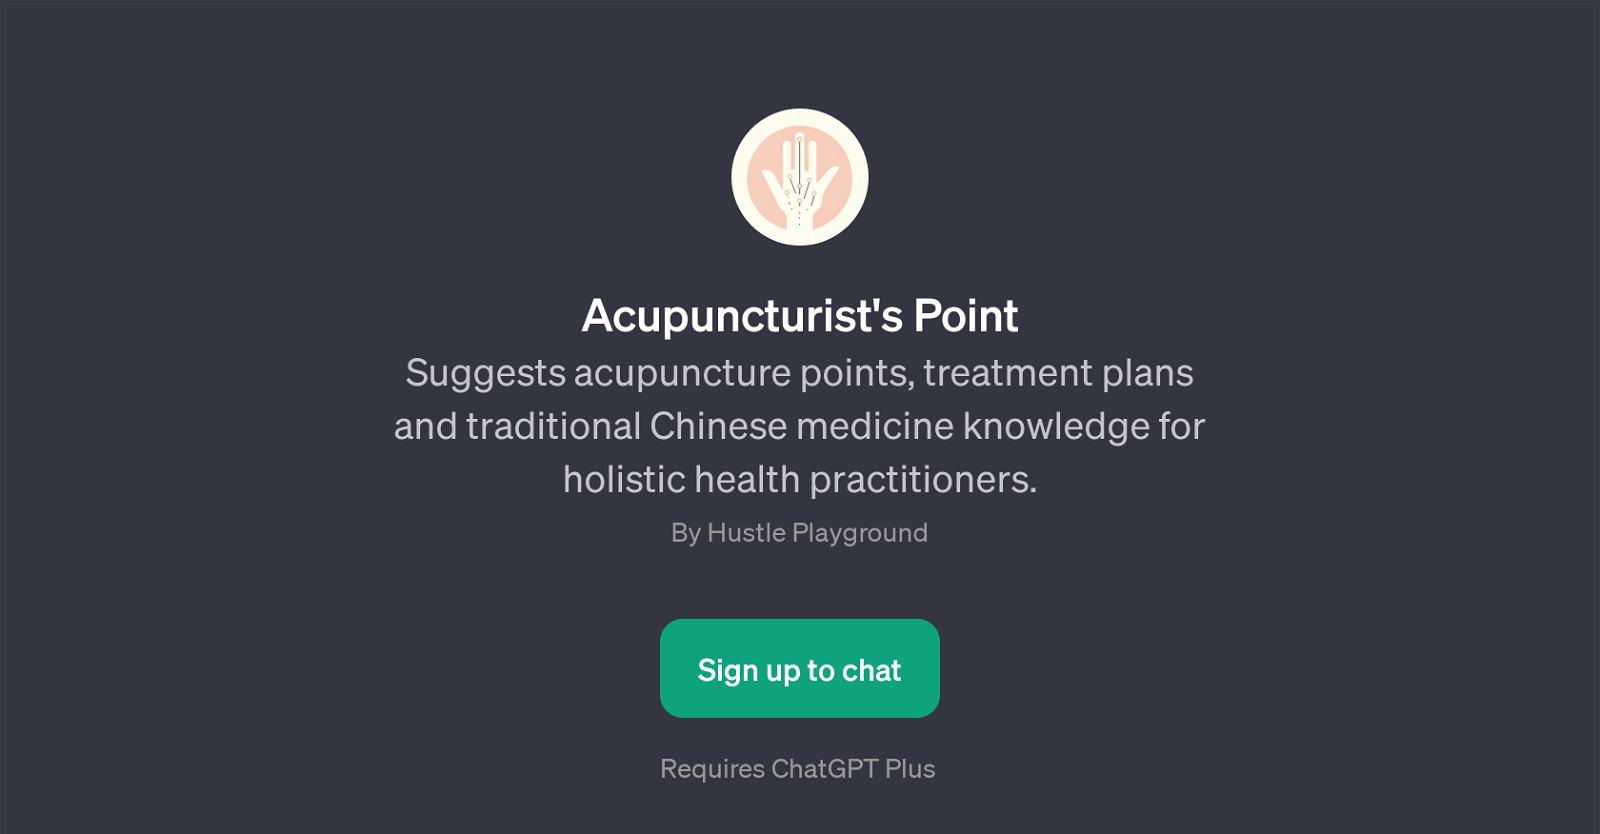 Acupuncturist's Point website